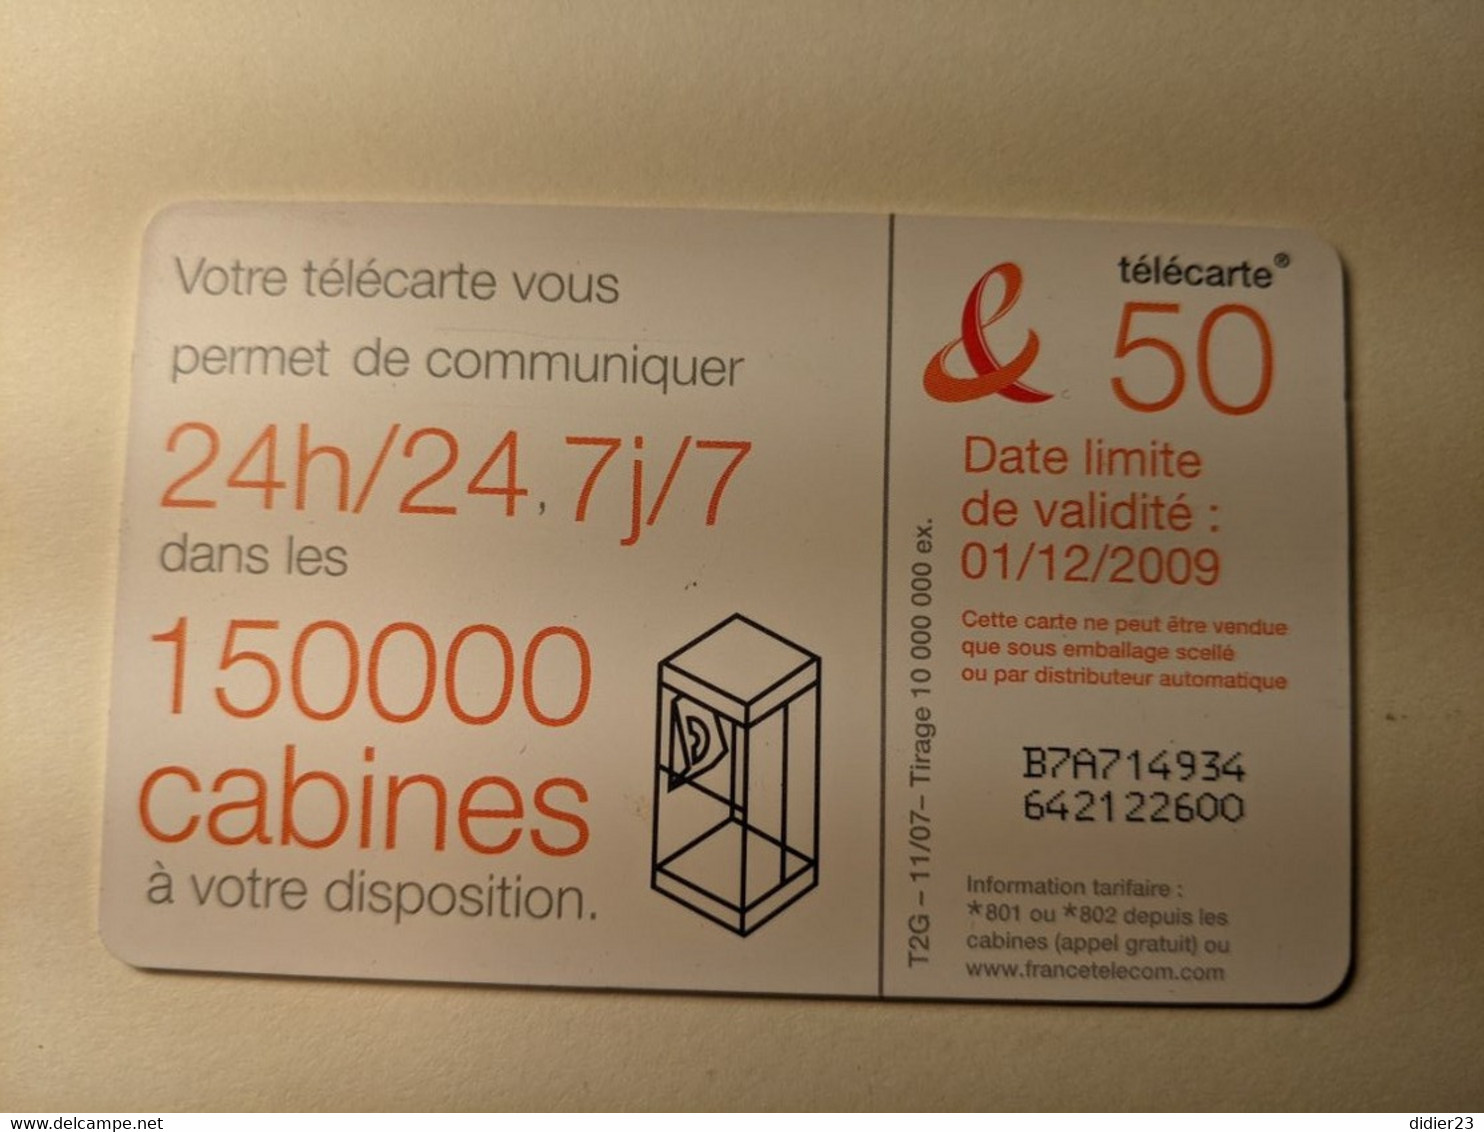 TELECARTE FRANCE TELECOM  50 - Telecom Operators